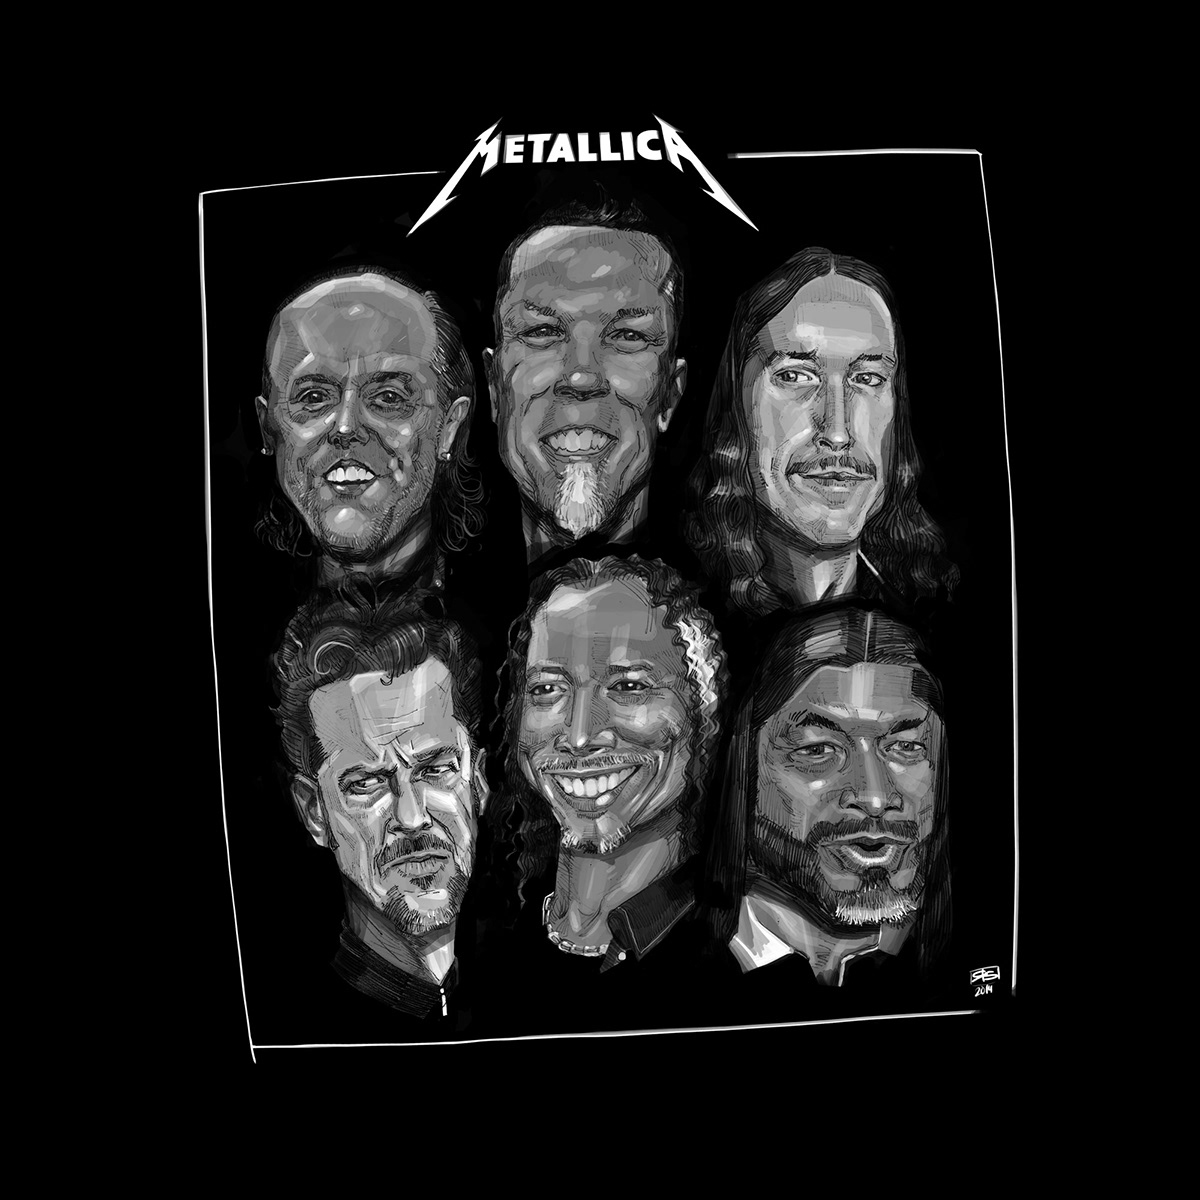 Metallica portrait tribute faces scetch black and white